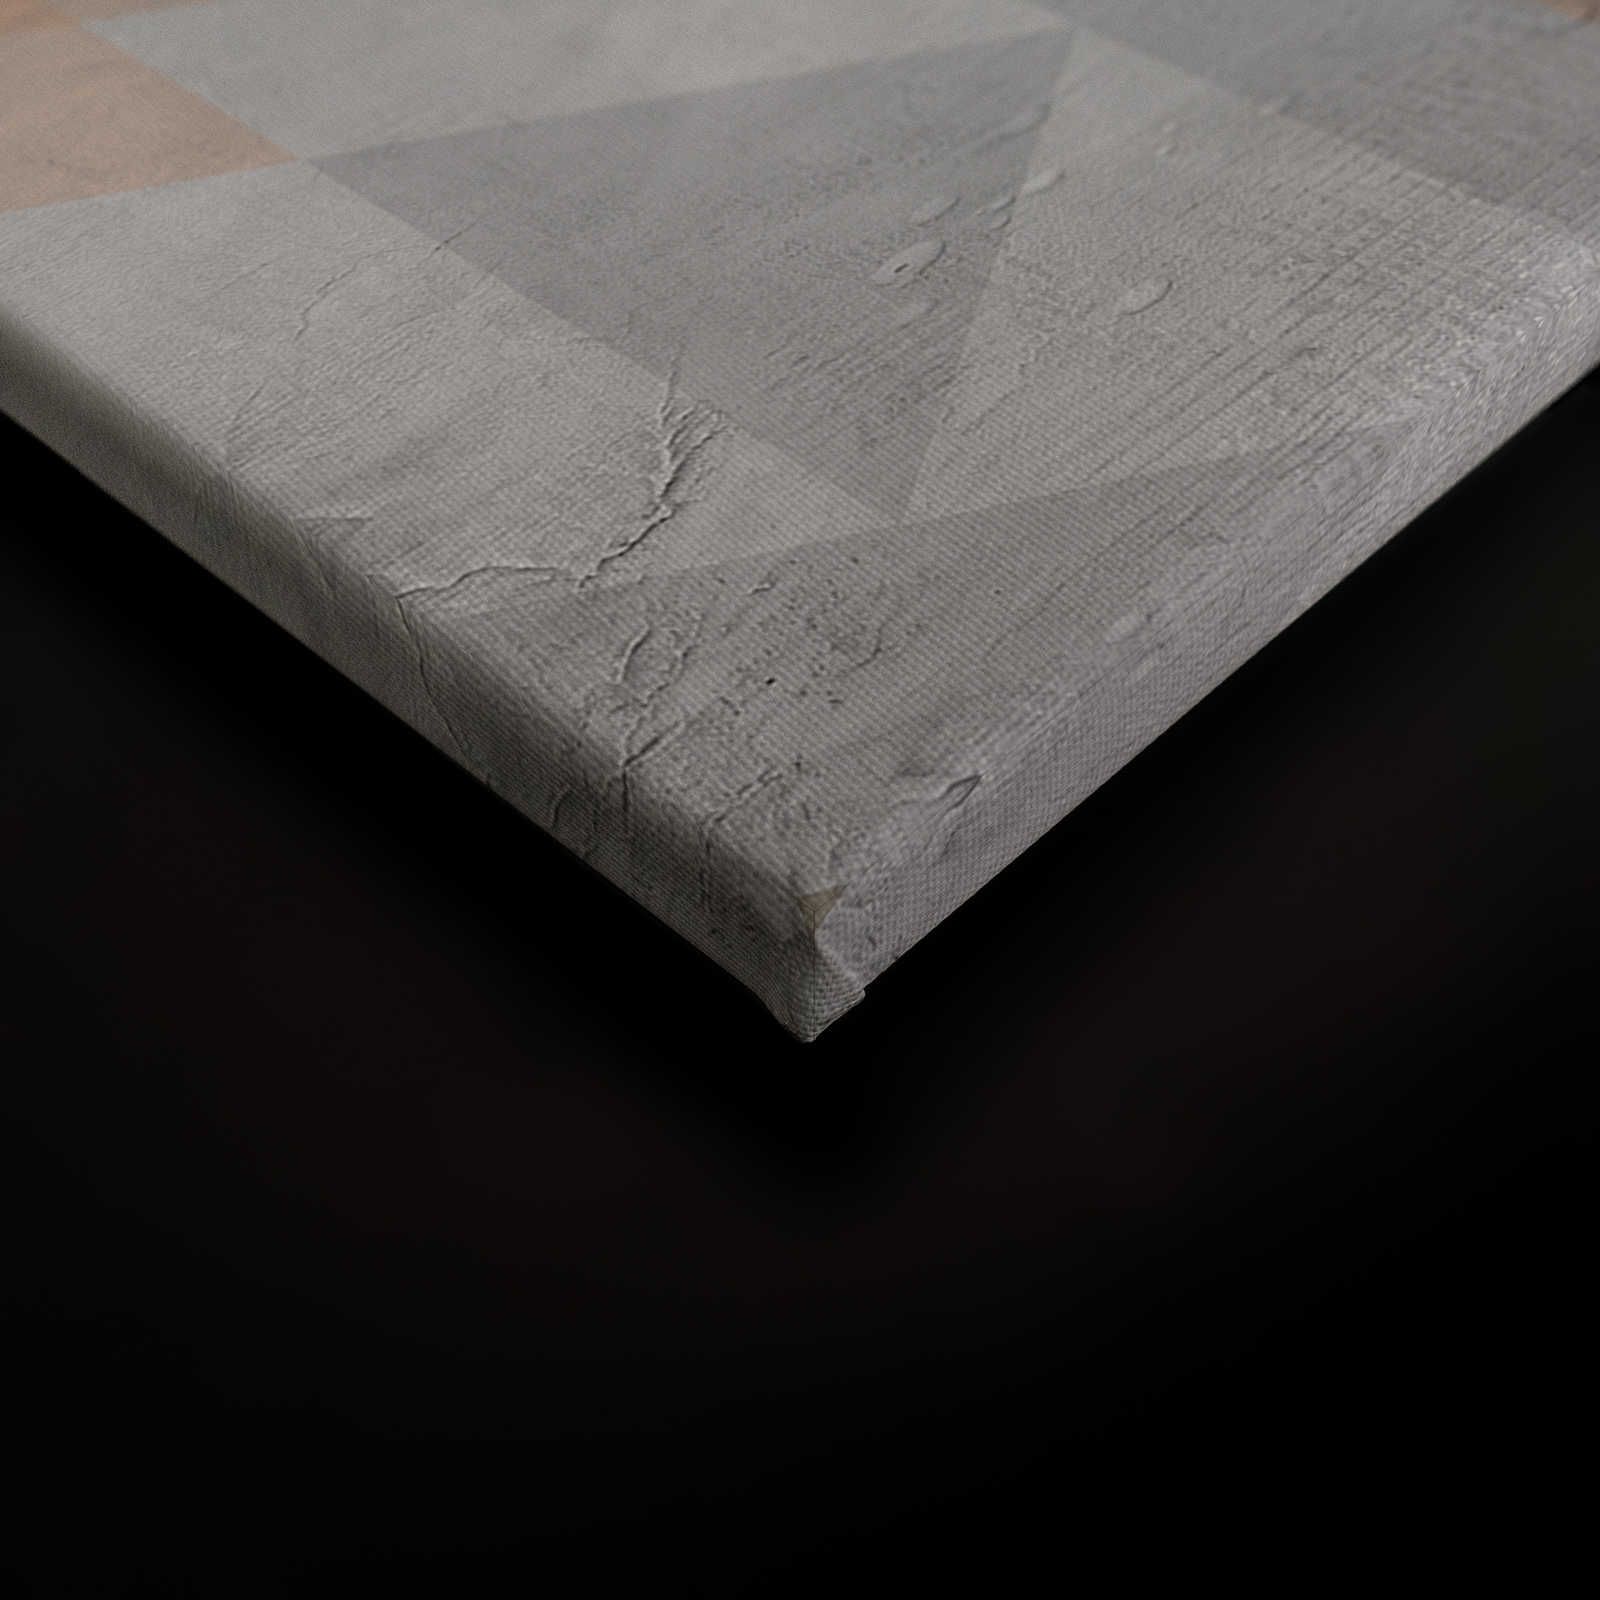             Quadro su tela con aspetto di gesso e disegno a diamante - 0,90 m x 0,60 m
        